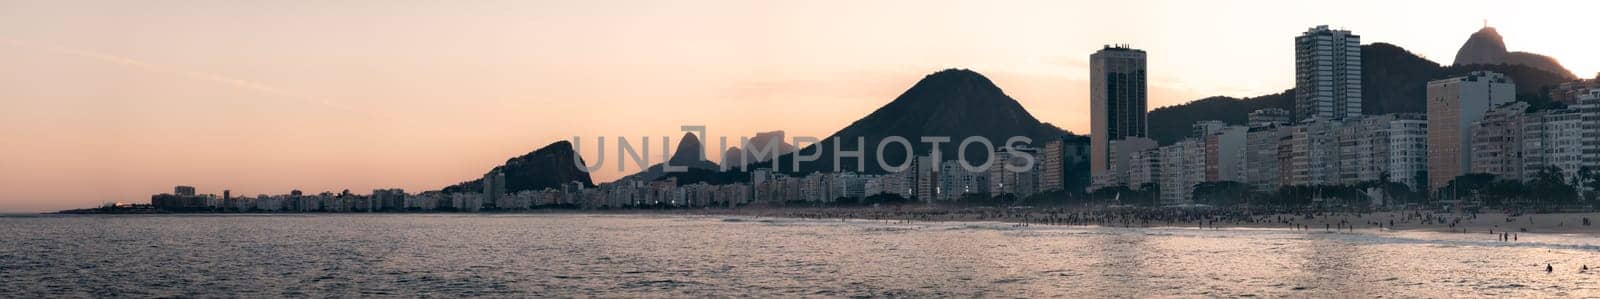 Golden Sunset Over Copacabana Beach and Christ the Redeemer by FerradalFCG